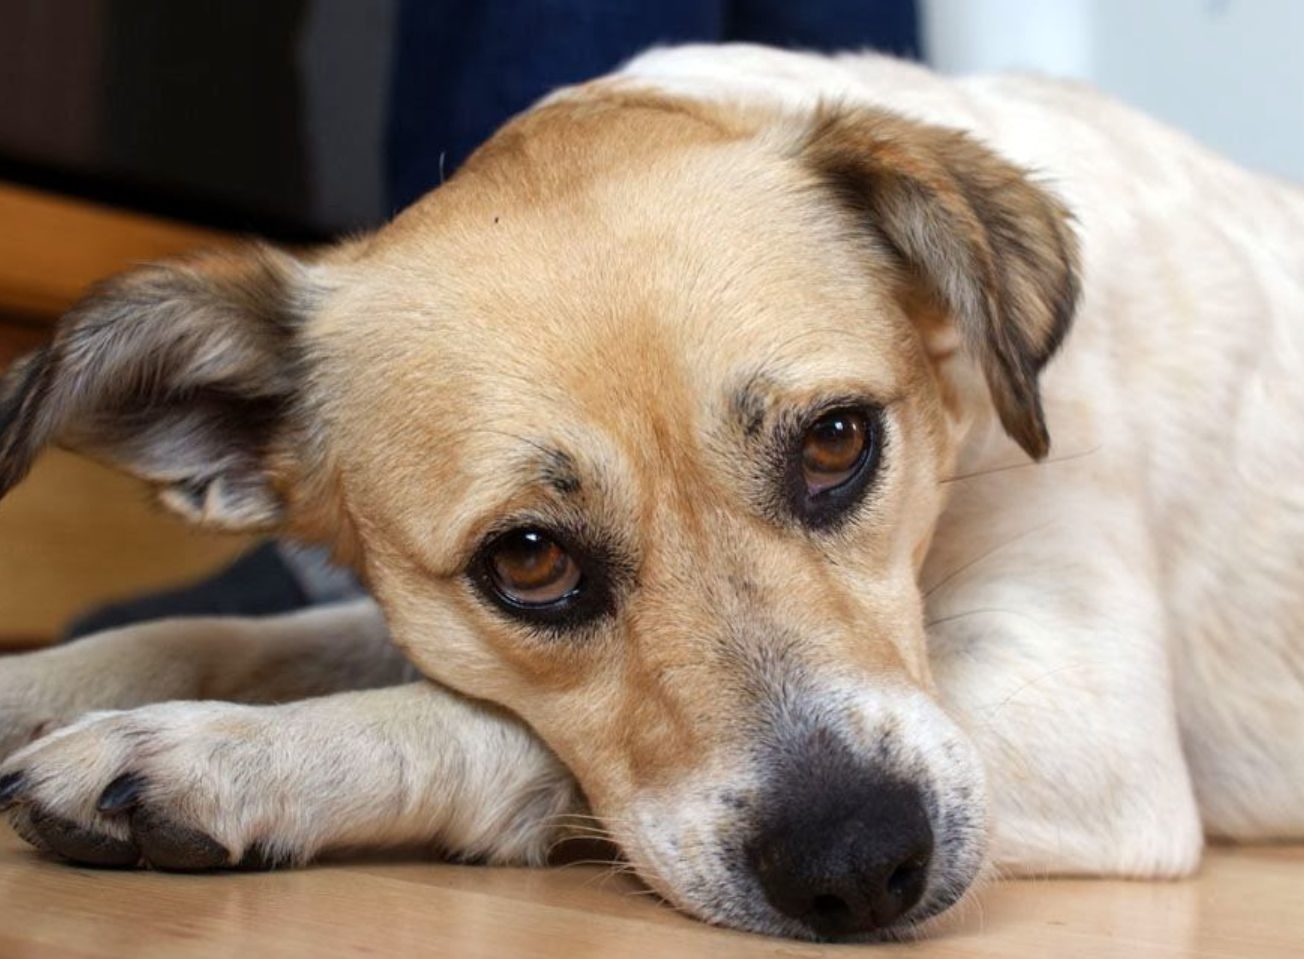 Φρίκη: Δύο νεαροί κρέμασαν σκυλάκι σε στάνη – Πρόστιμο 50.000 ευρώ